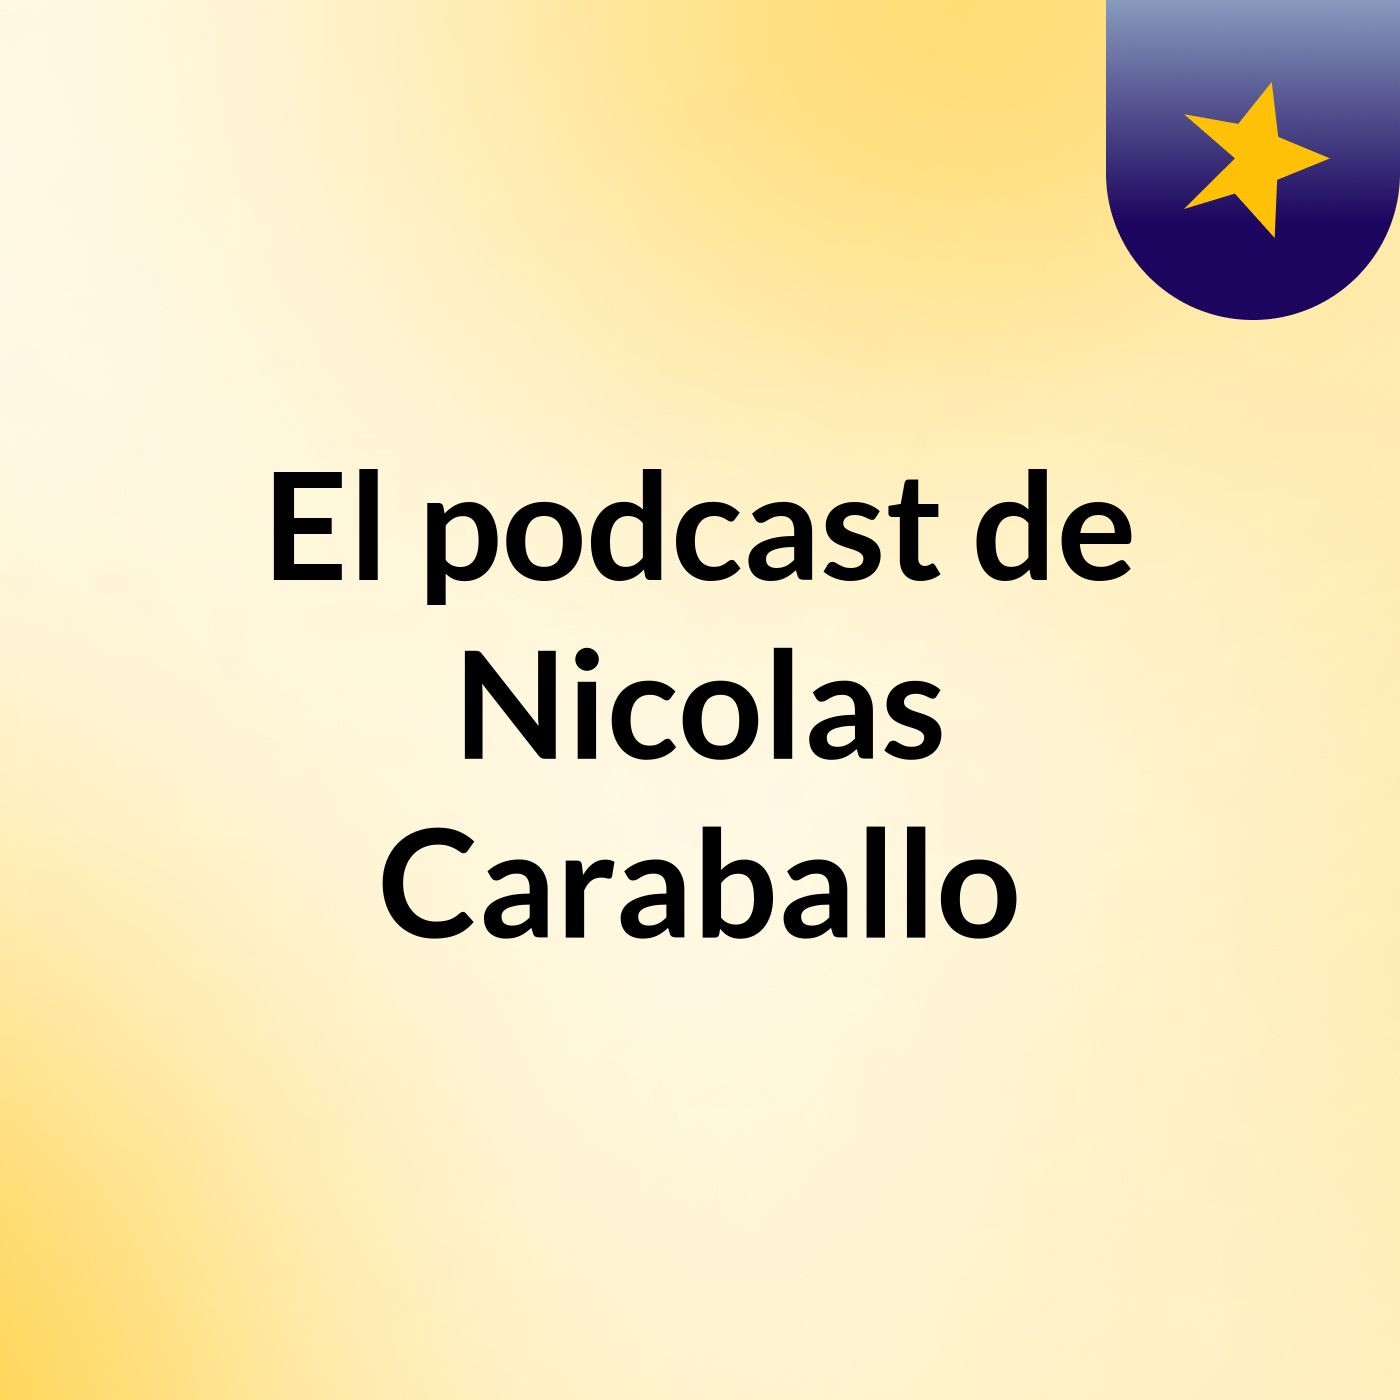 Episodio 45 - El podcast de Nicolas Caraballo